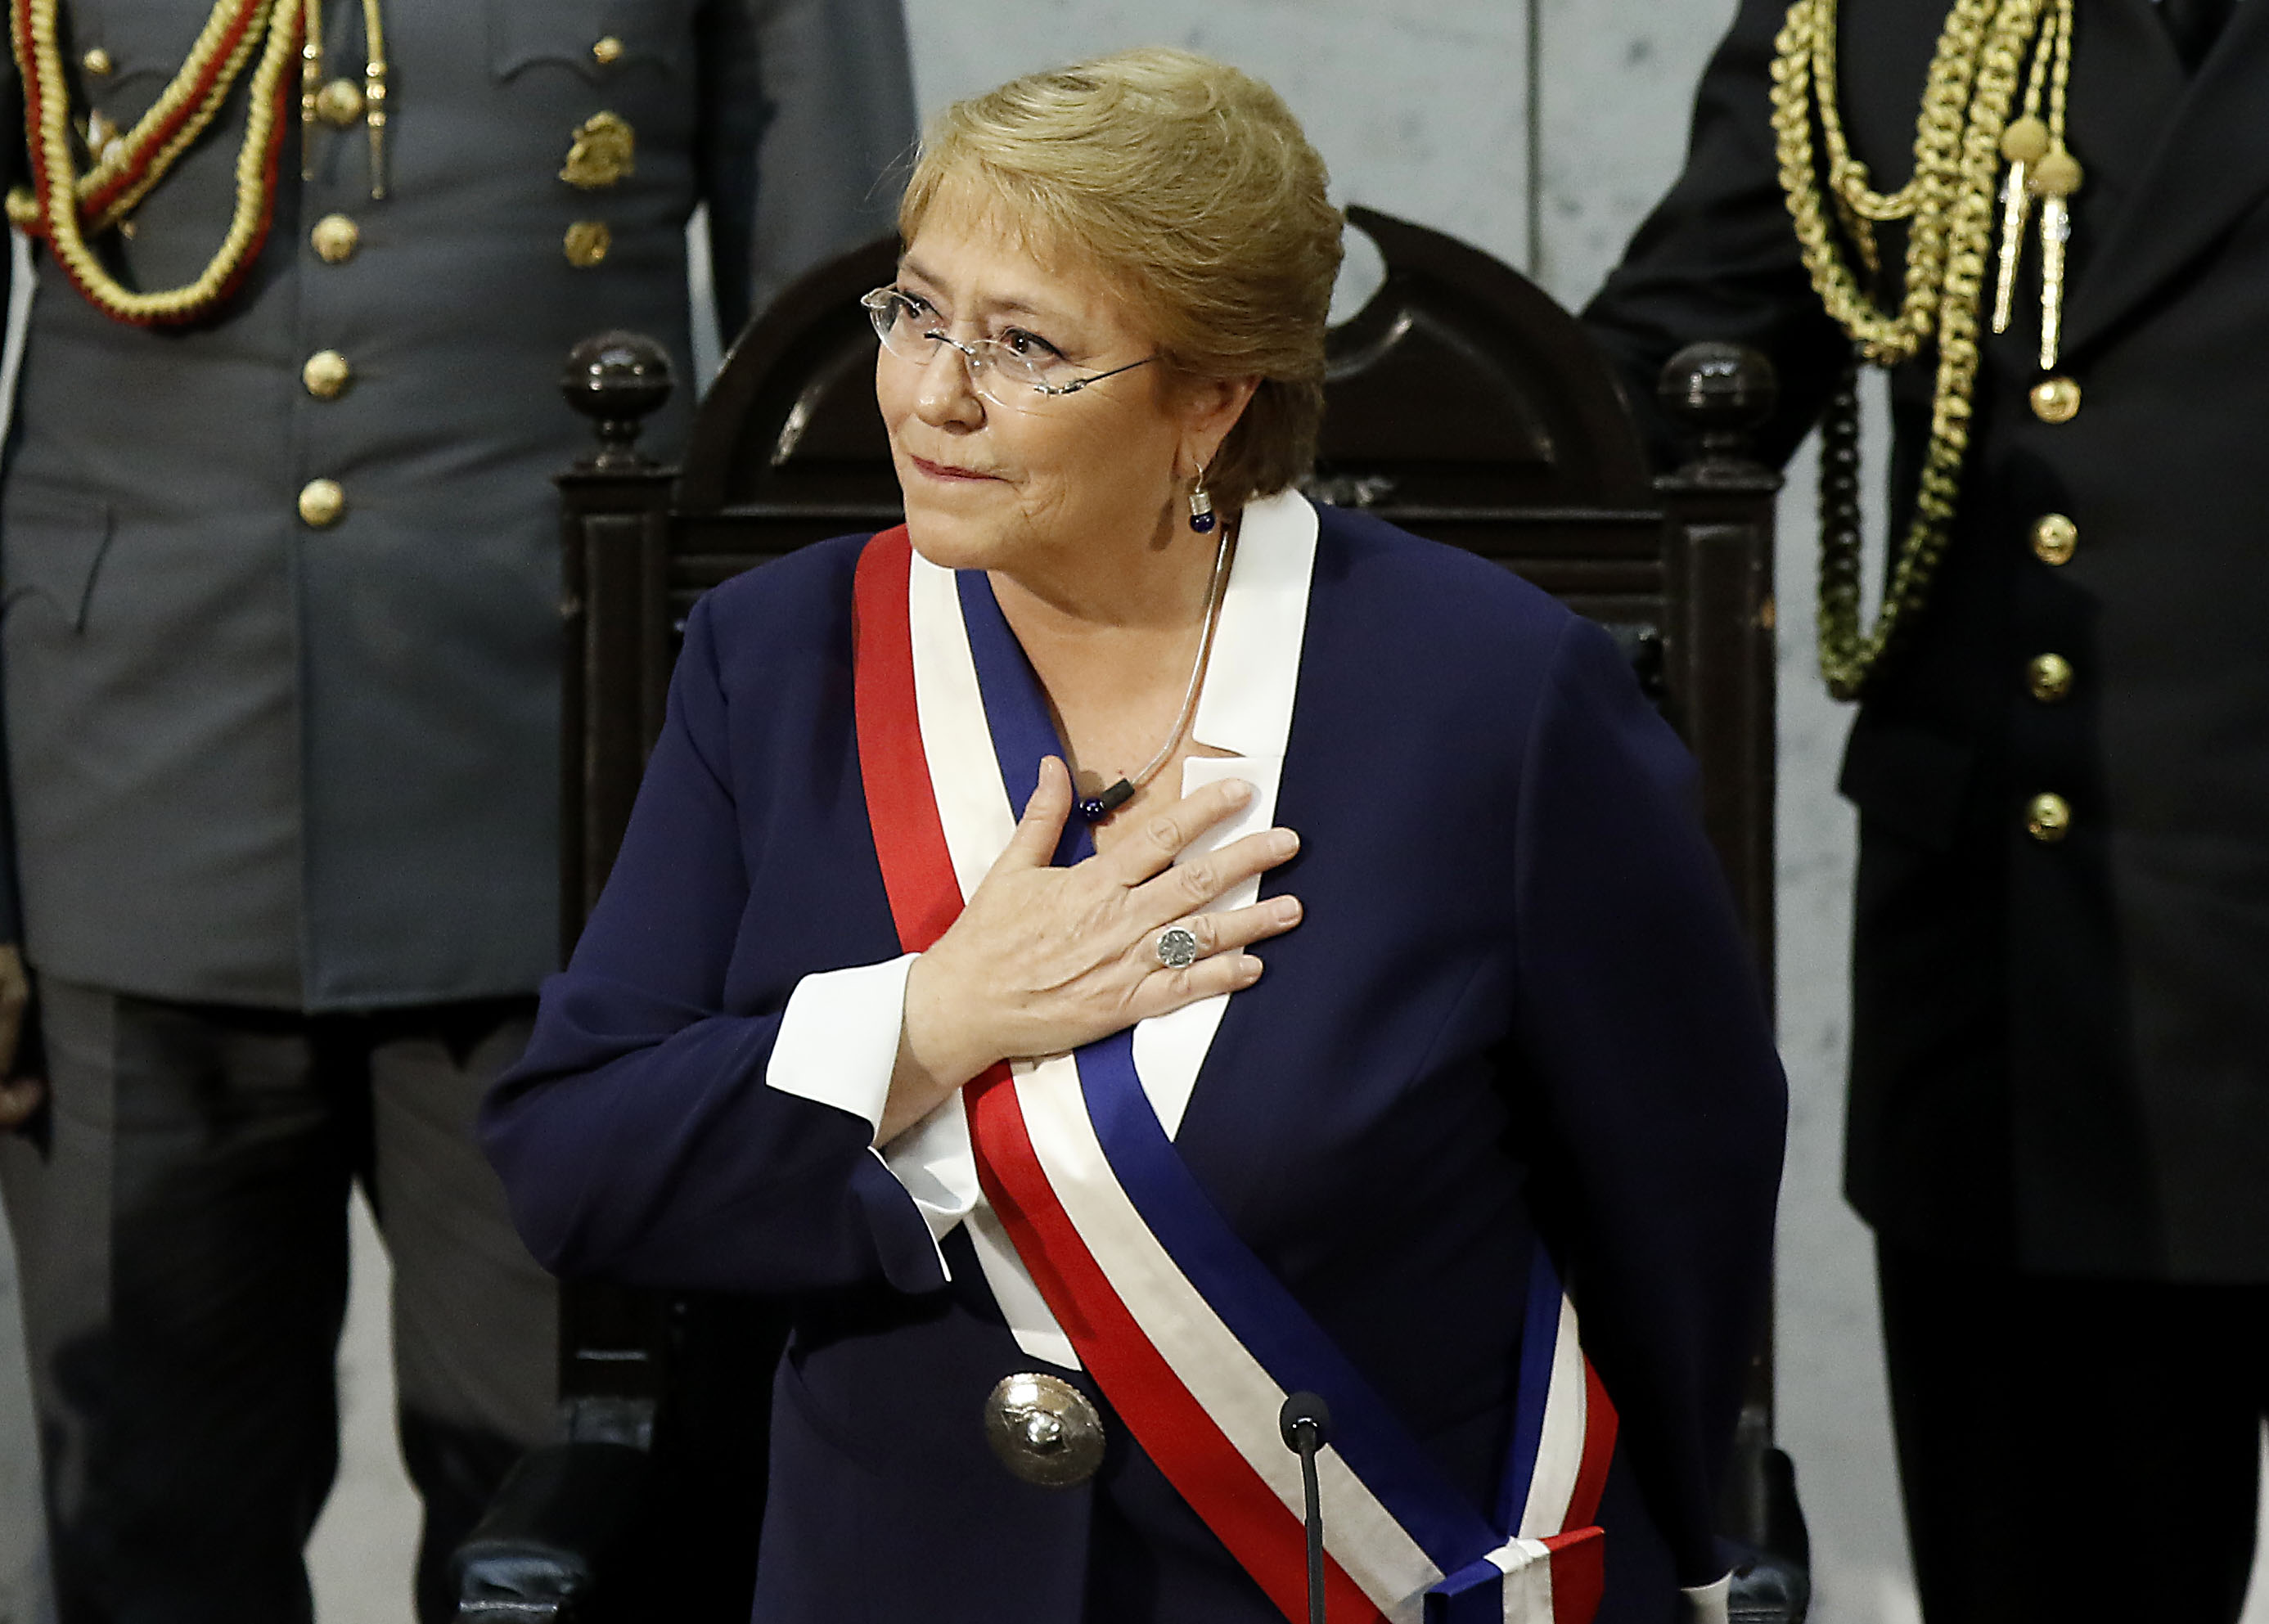 La última Cuenta Pública de Bachelet: Las frases y promesas que marcaron su discurso - Radio Duna